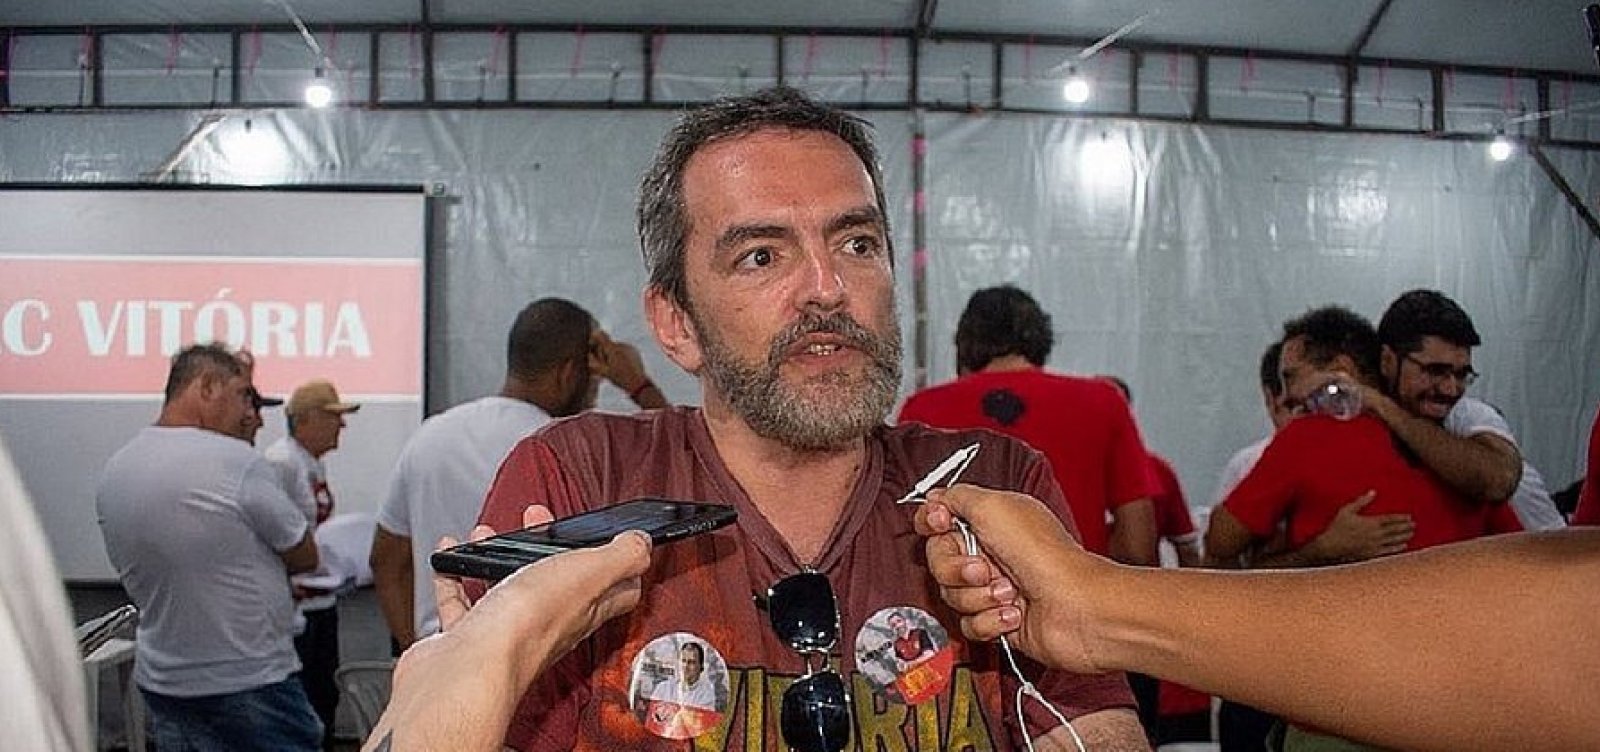 "Fábio Mota está muito abatido e a intenção dele é renunciar à presidência do Vitória", diz conselheiro